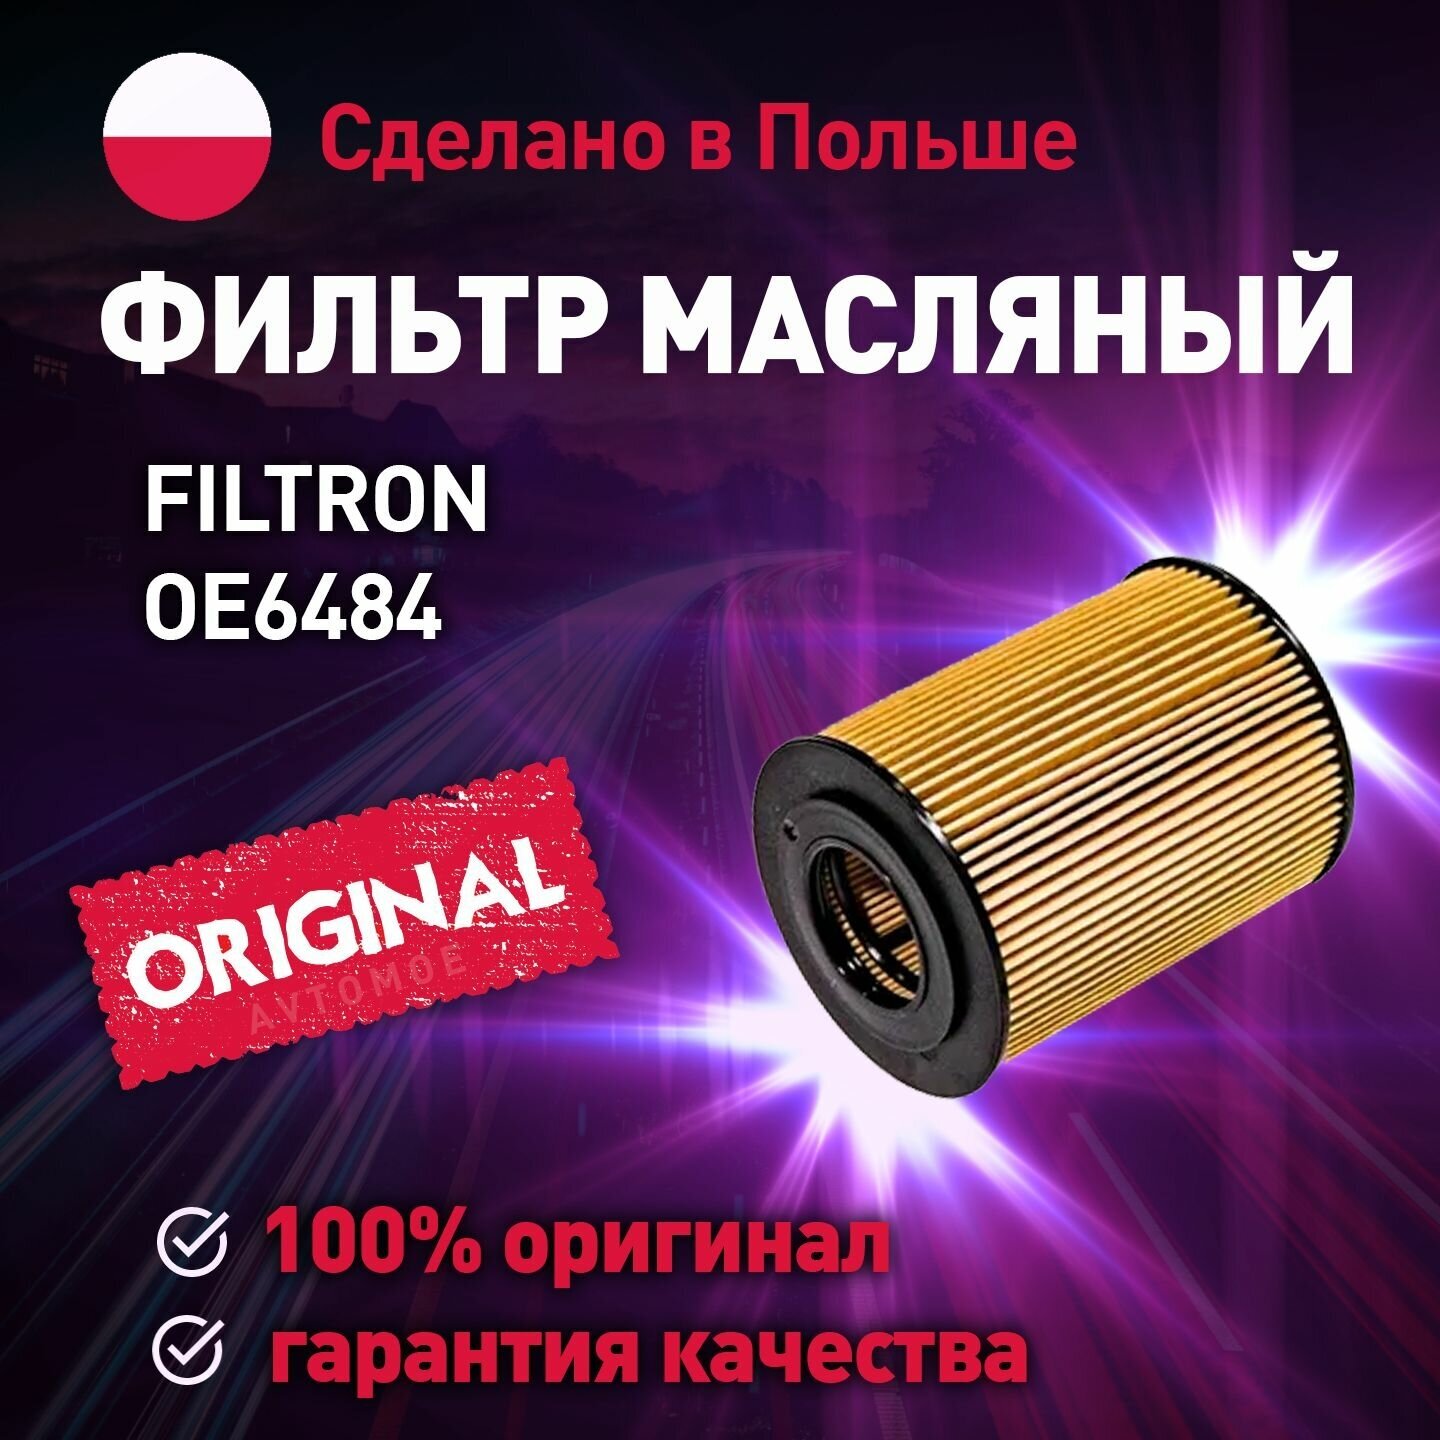 Фильтр масляный OE6484 FILTRON для OPEL ASTRA / Масляный фильтр Фильтрон для Опель Астра